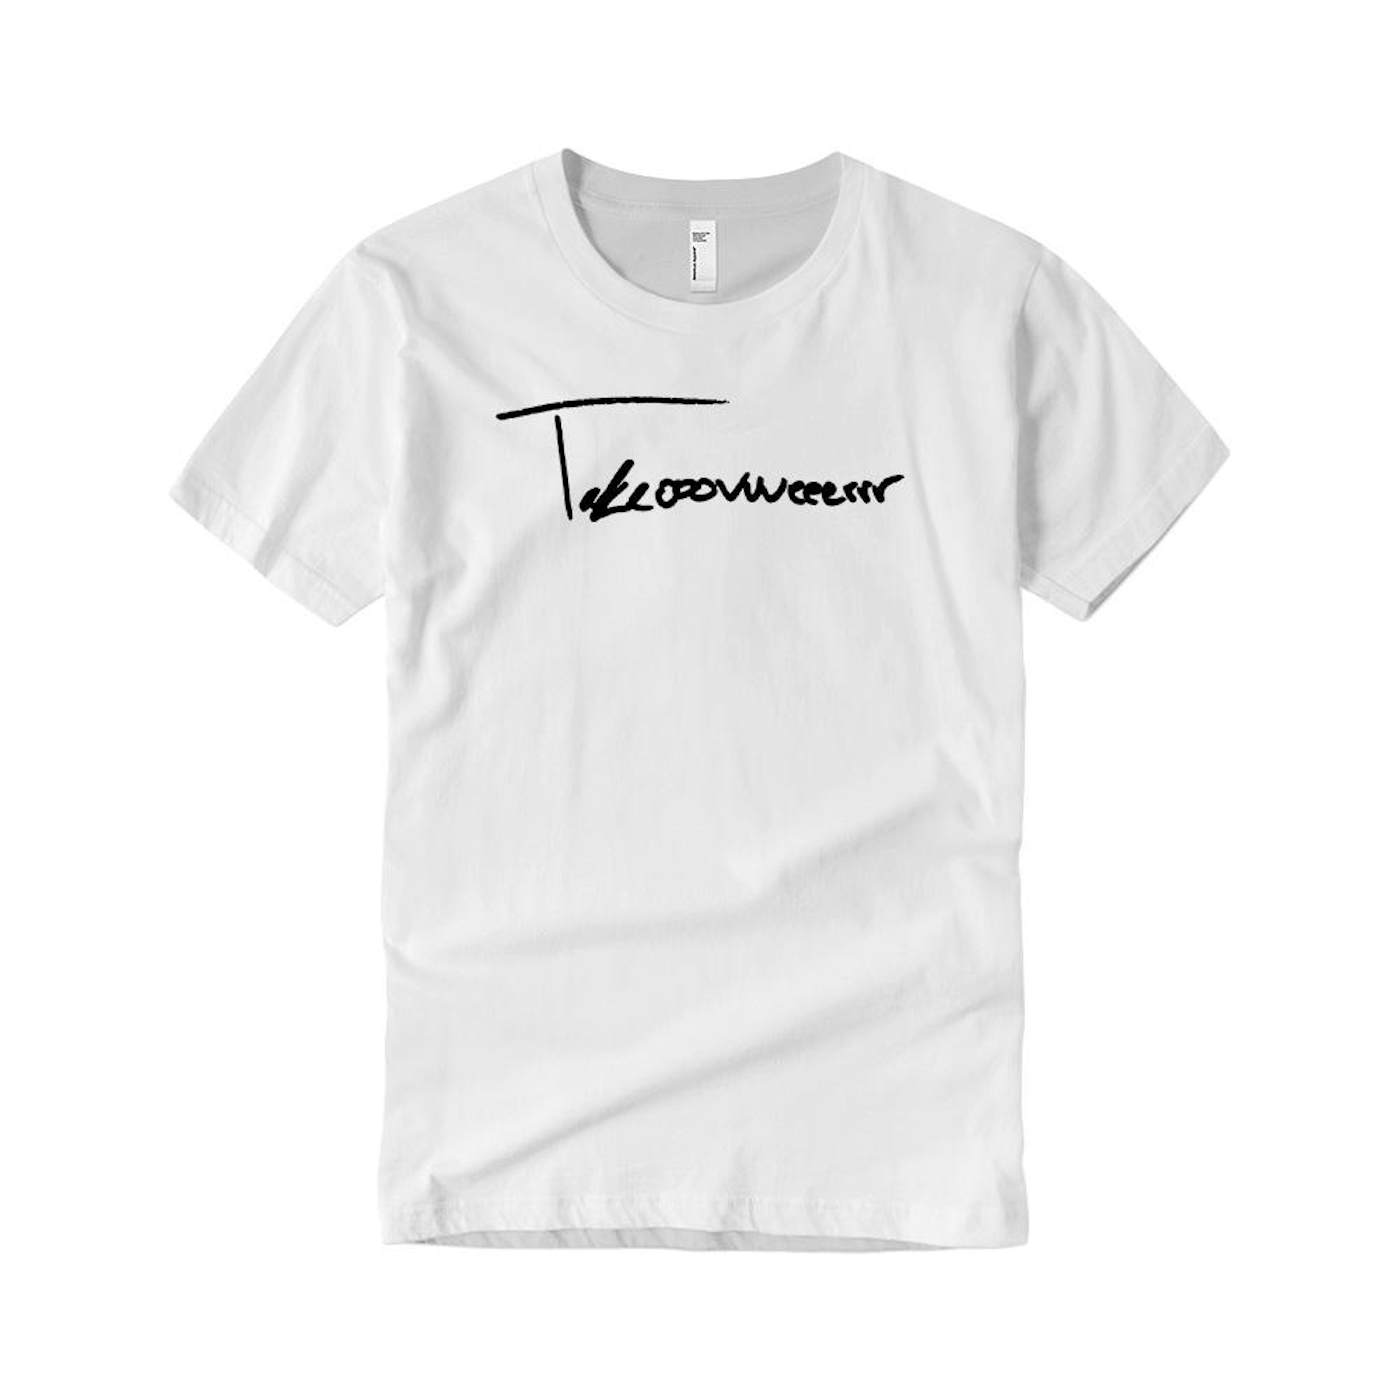 Taylor J Takeover Signature T-Shirt (White/Black)